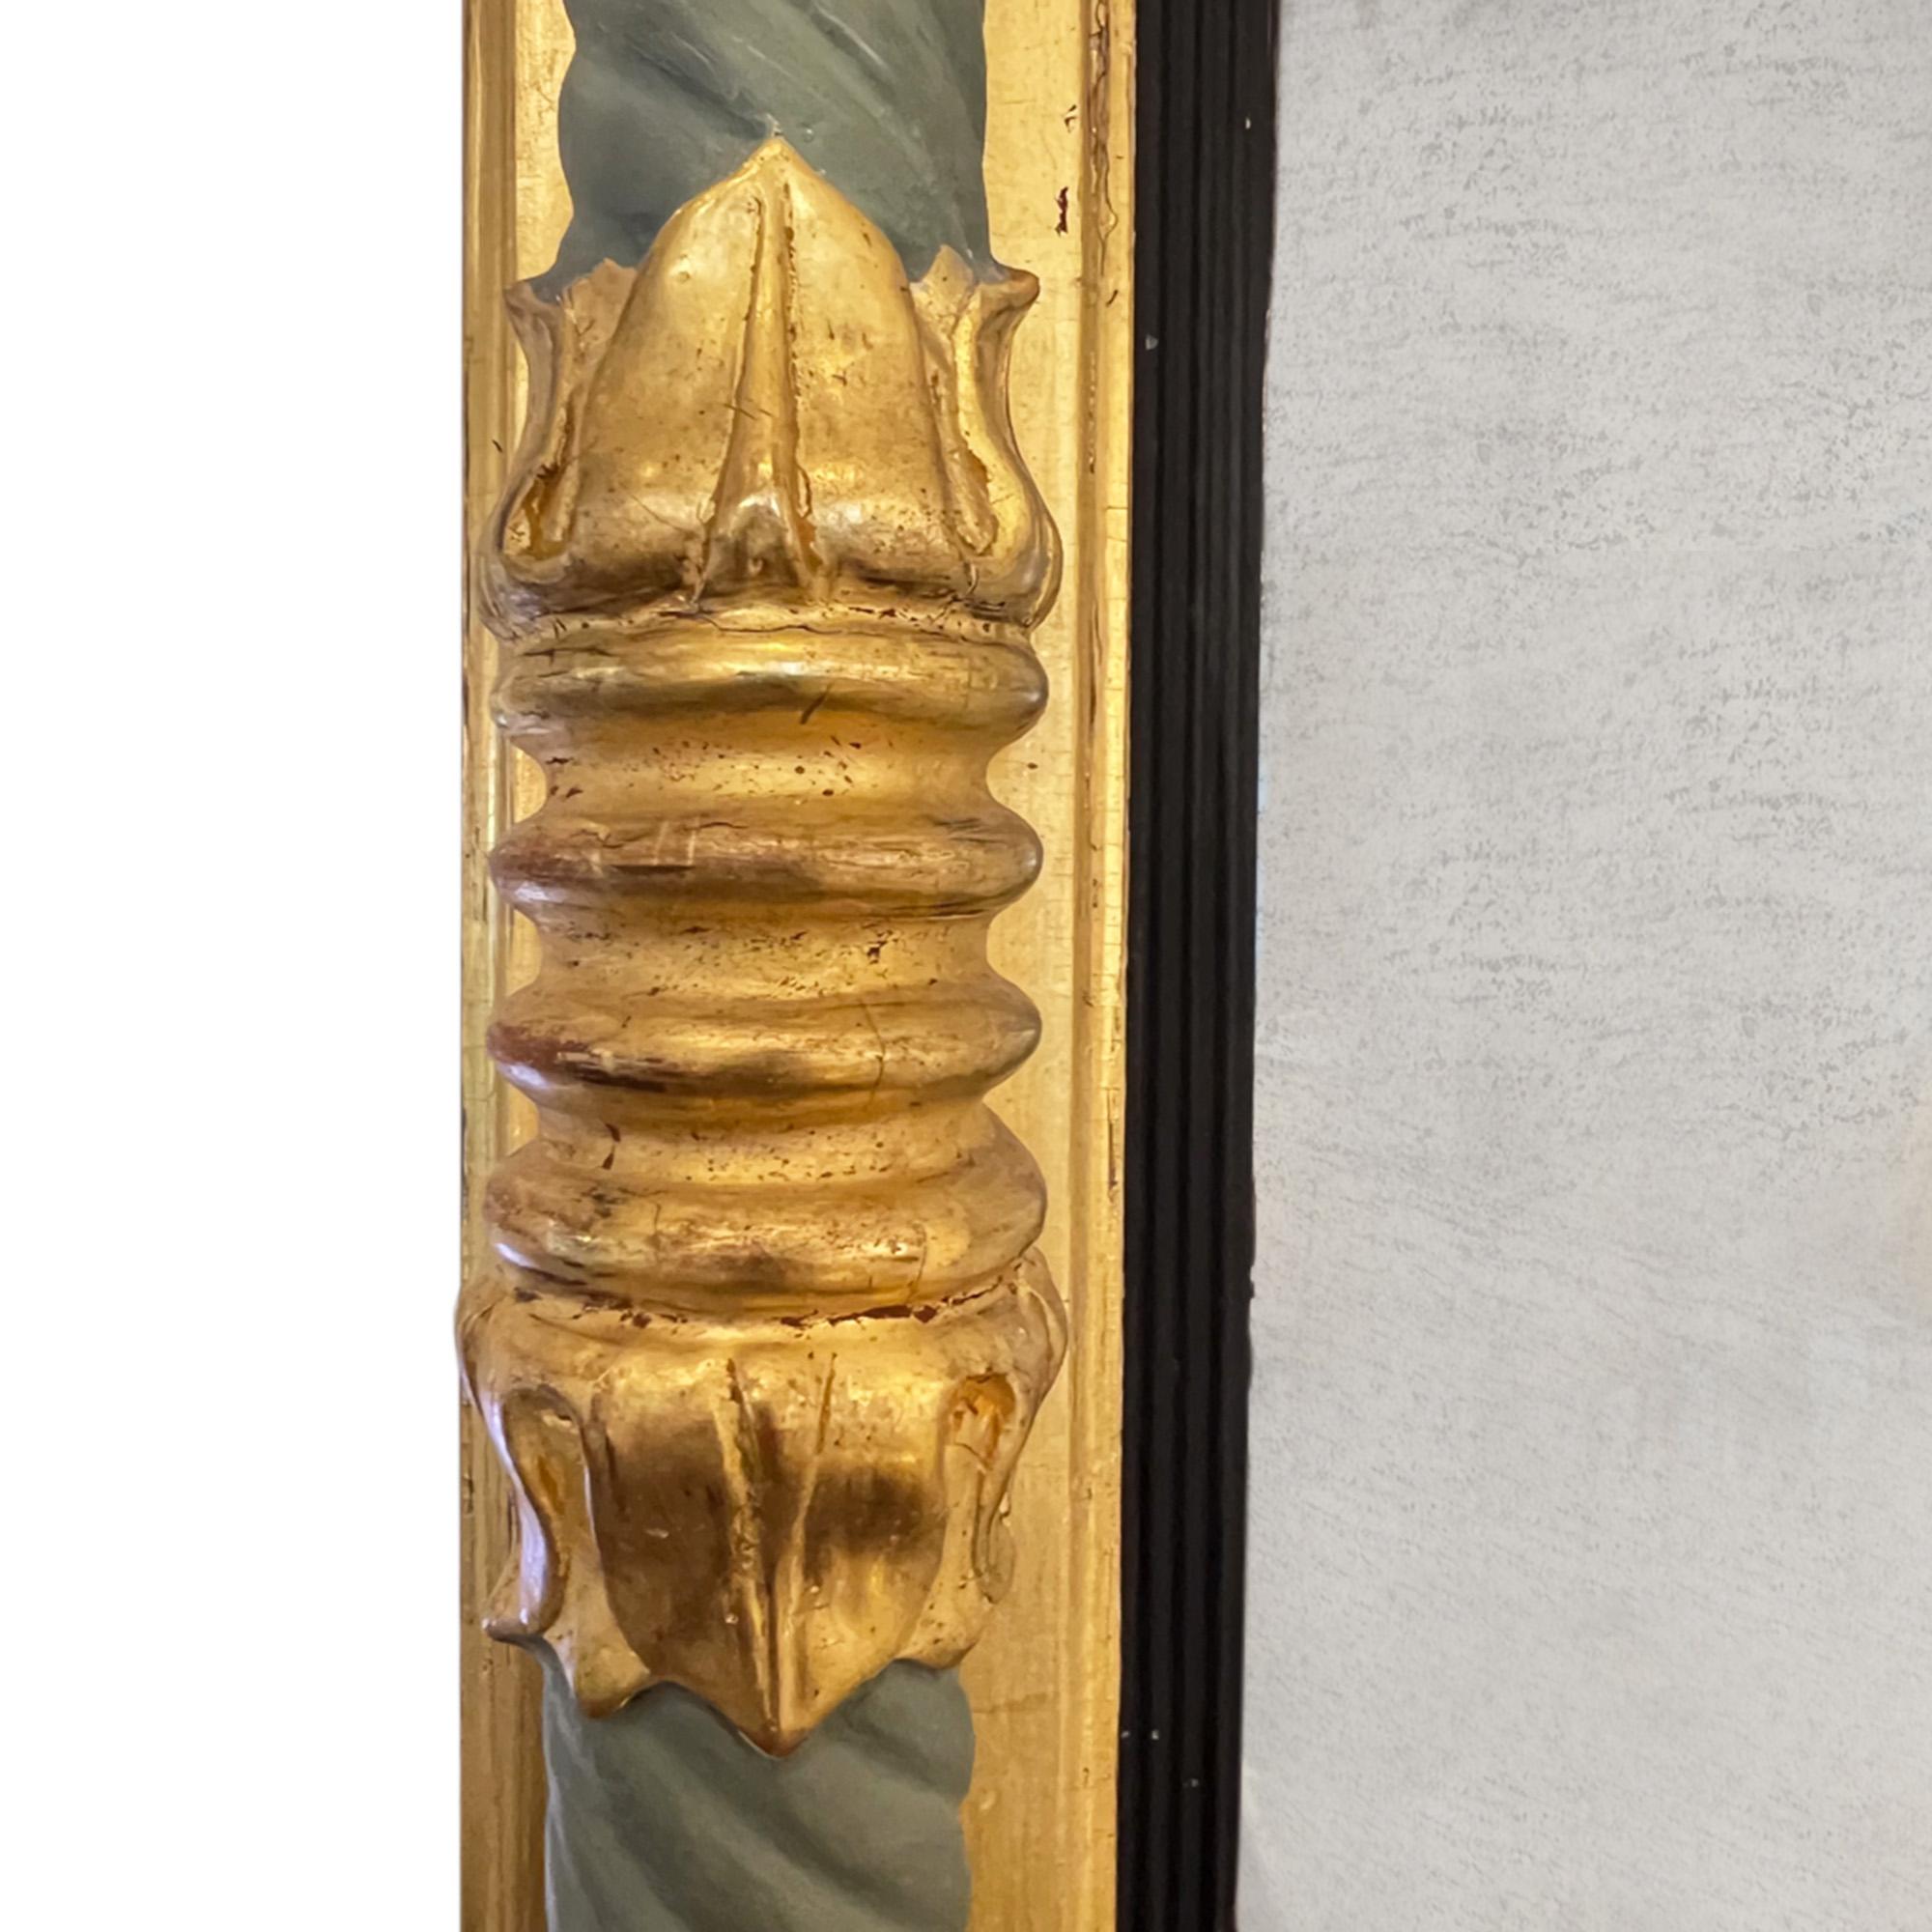 Ce grand miroir en bois doré a été fabriqué au XIXe siècle en Suède. 

Joli détail, magnifiquement sculpté sans être trop exigeant. La peinture verte rafraîchie s'harmonise avec le bois doré et la plaque de miroir d'origine est légèrement roussie.